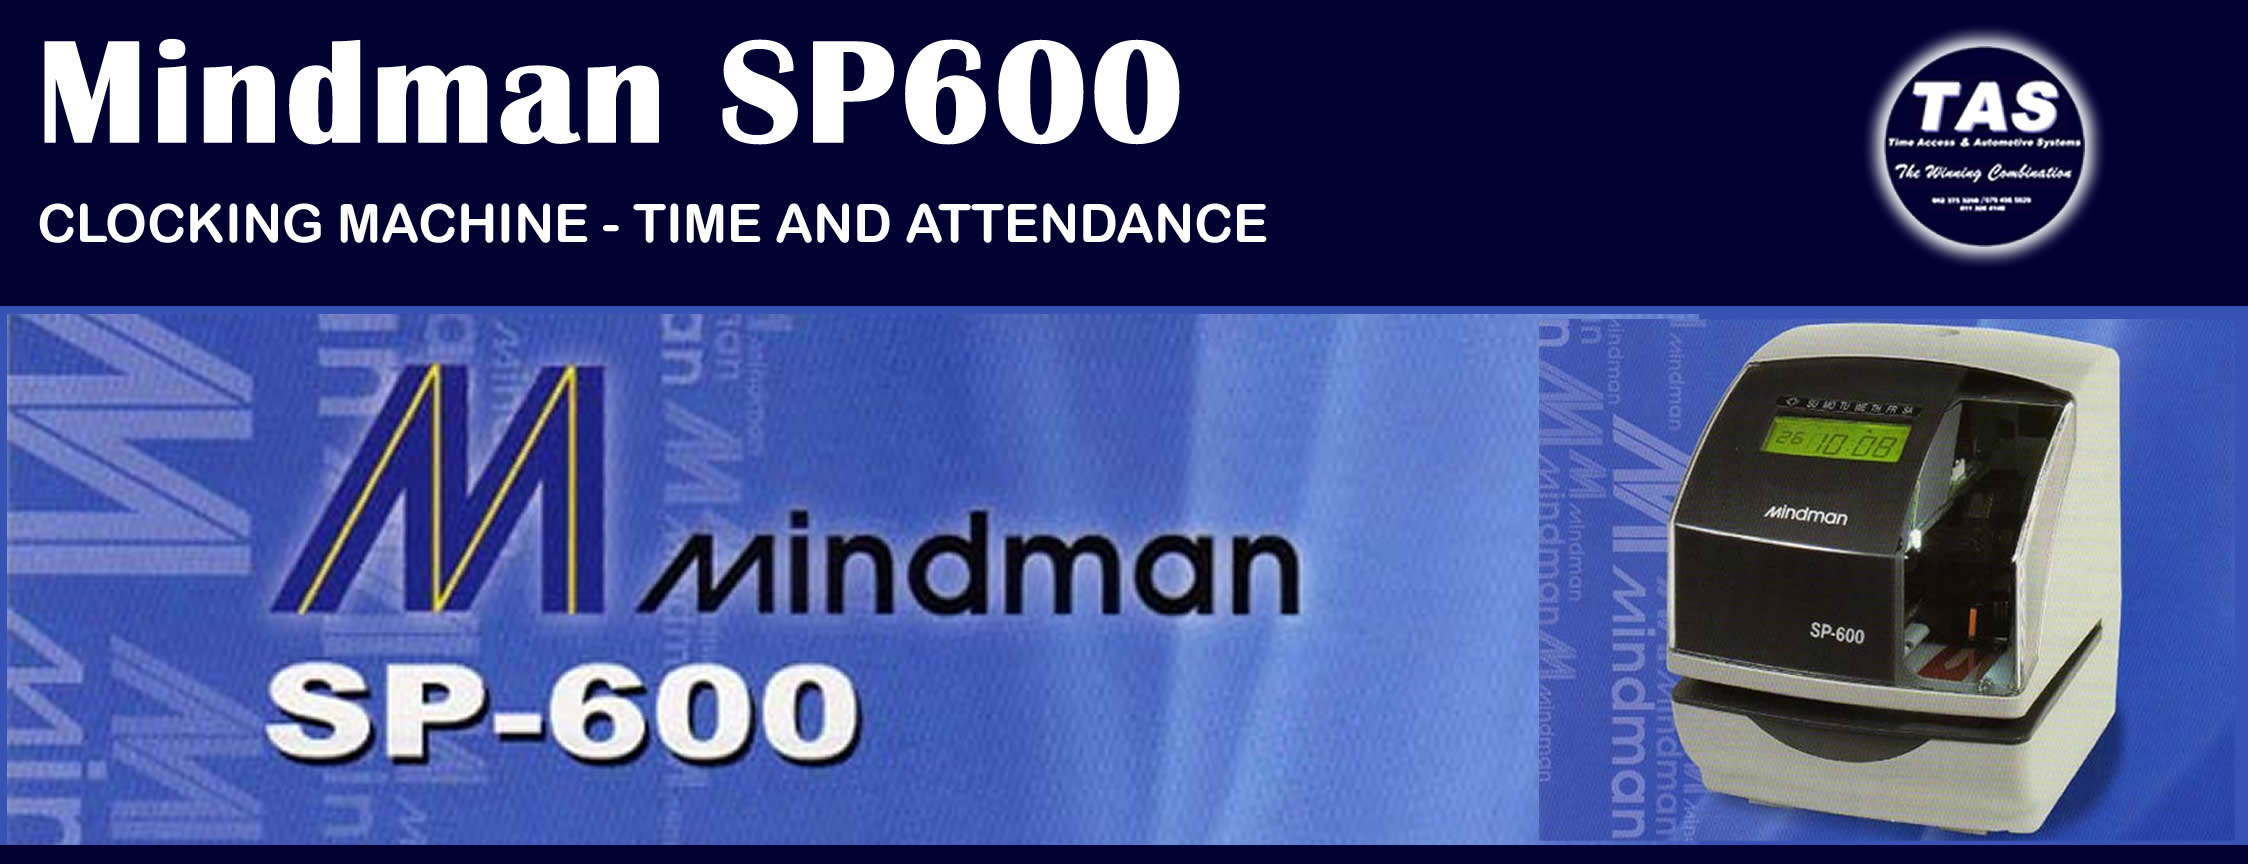 clocking-machine-mindman SP600 Banner